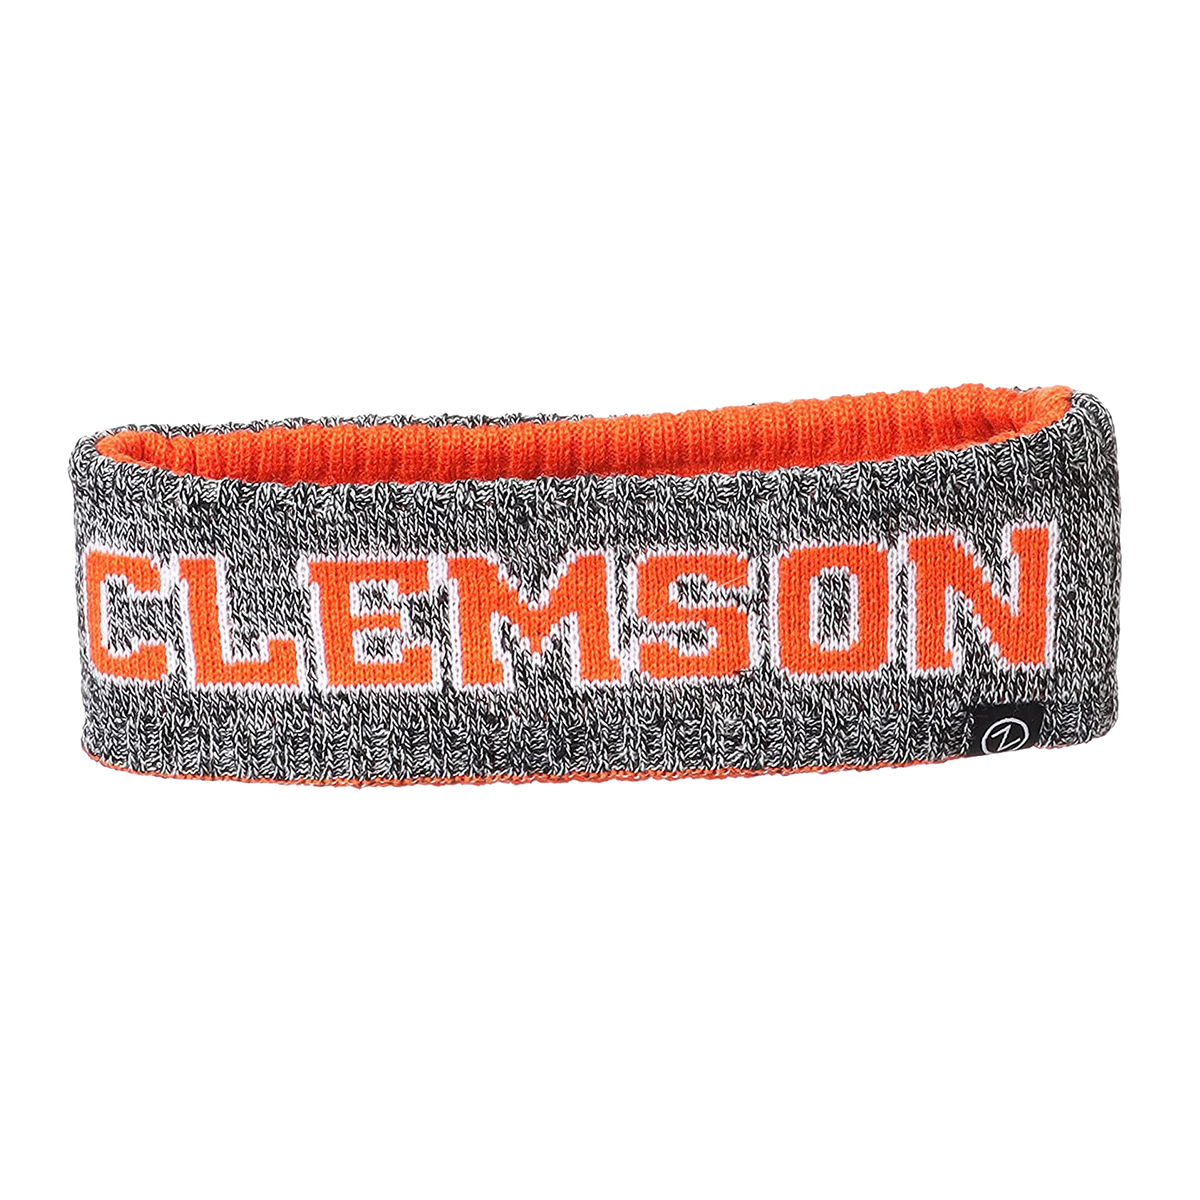 Clemson Killington Headband with CLEMSON